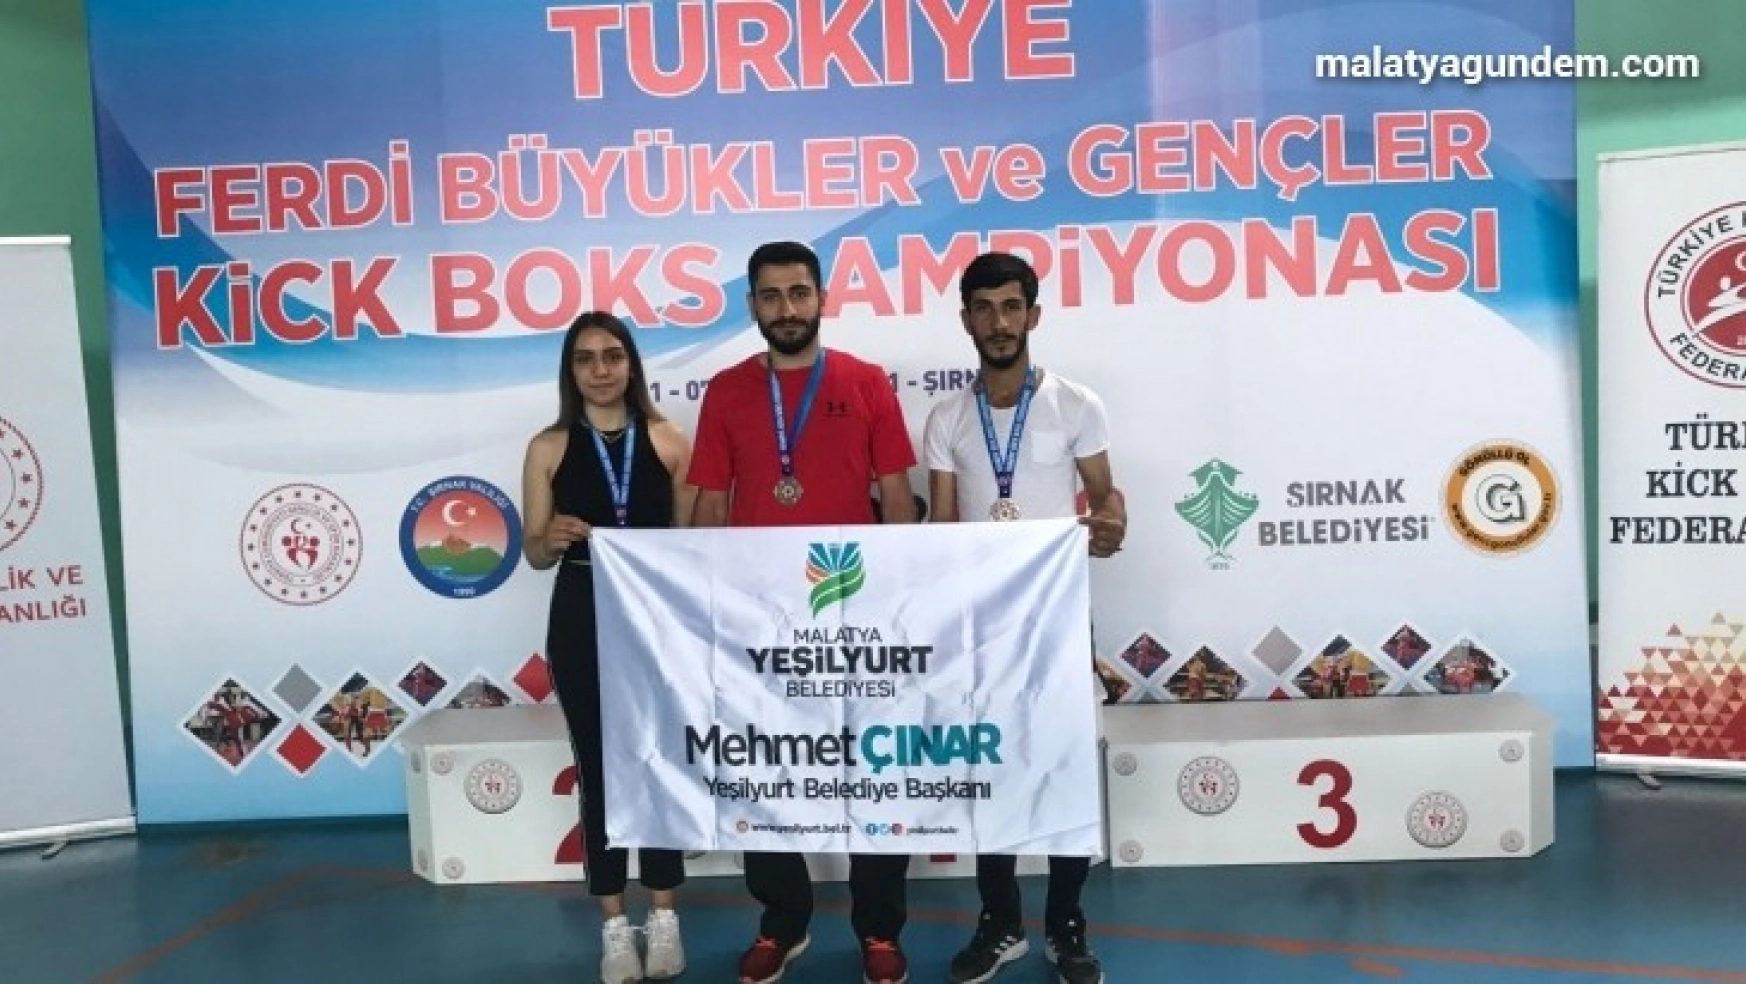 Yeşilyurt Belediyesi kıck-boks sporcuları, Şırnak'tan başarılarla döndü